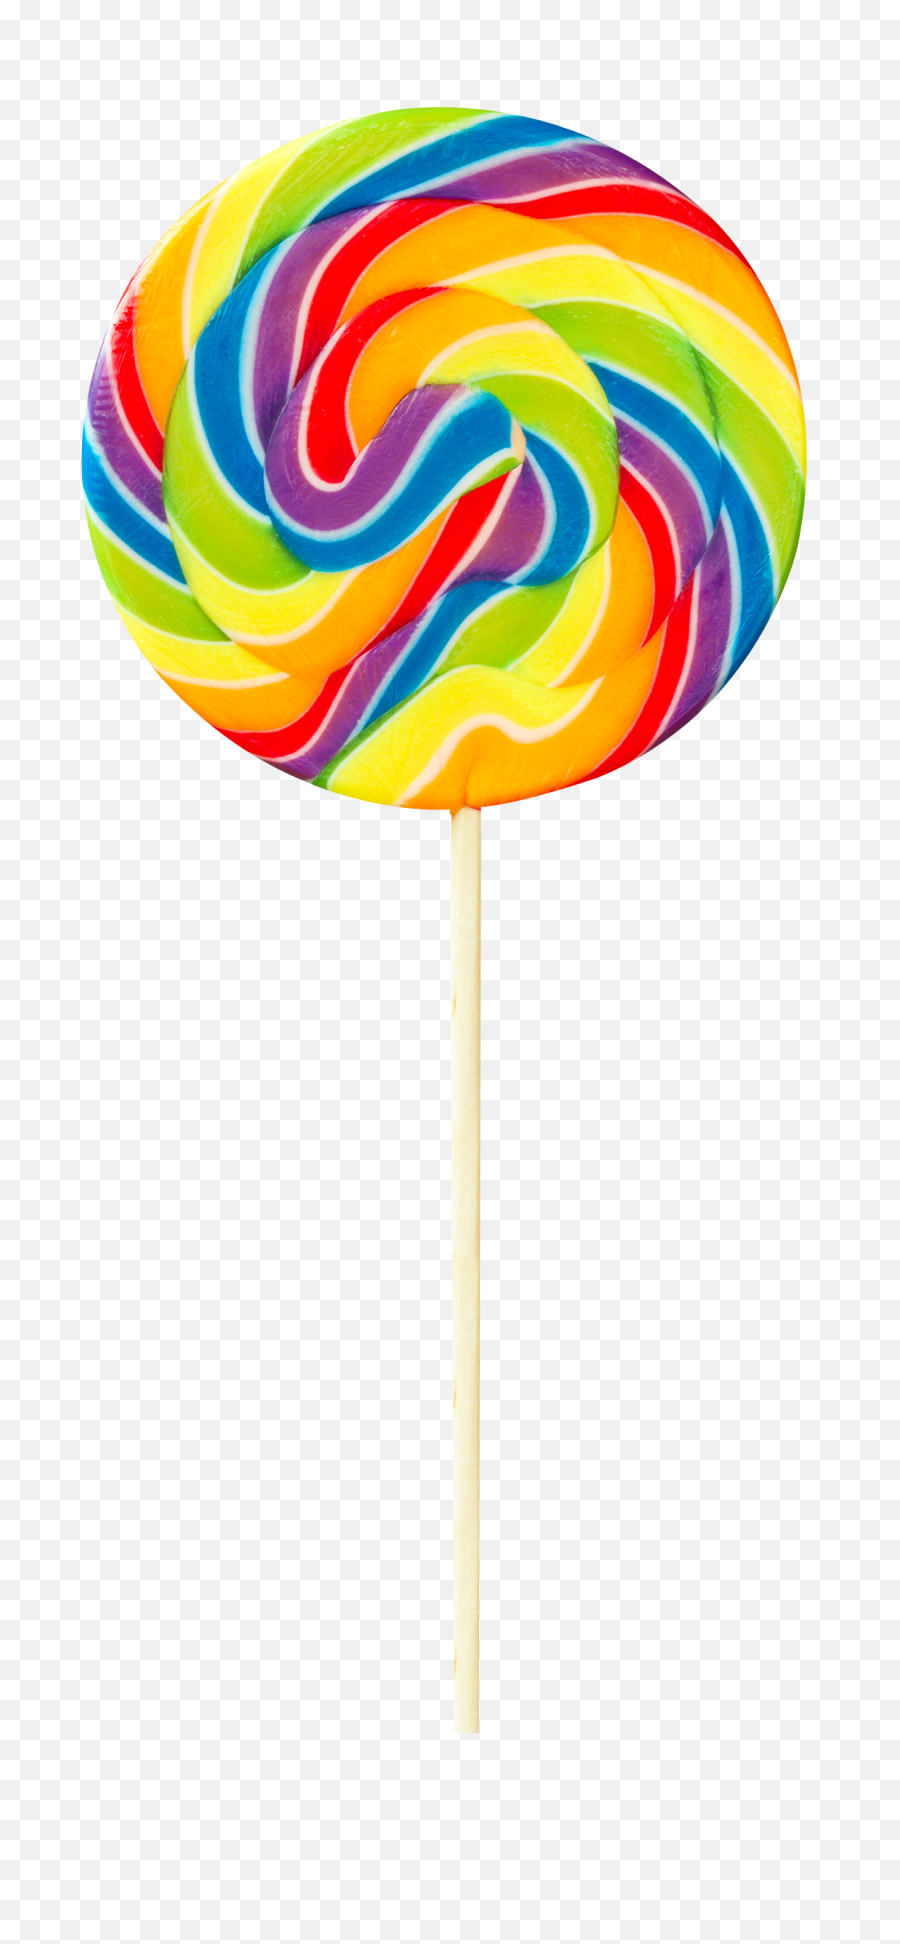 Lollipop Clipart Swirl Picture 1571108 - Transparent Background Lollipop Transparent Png,Swirl Png